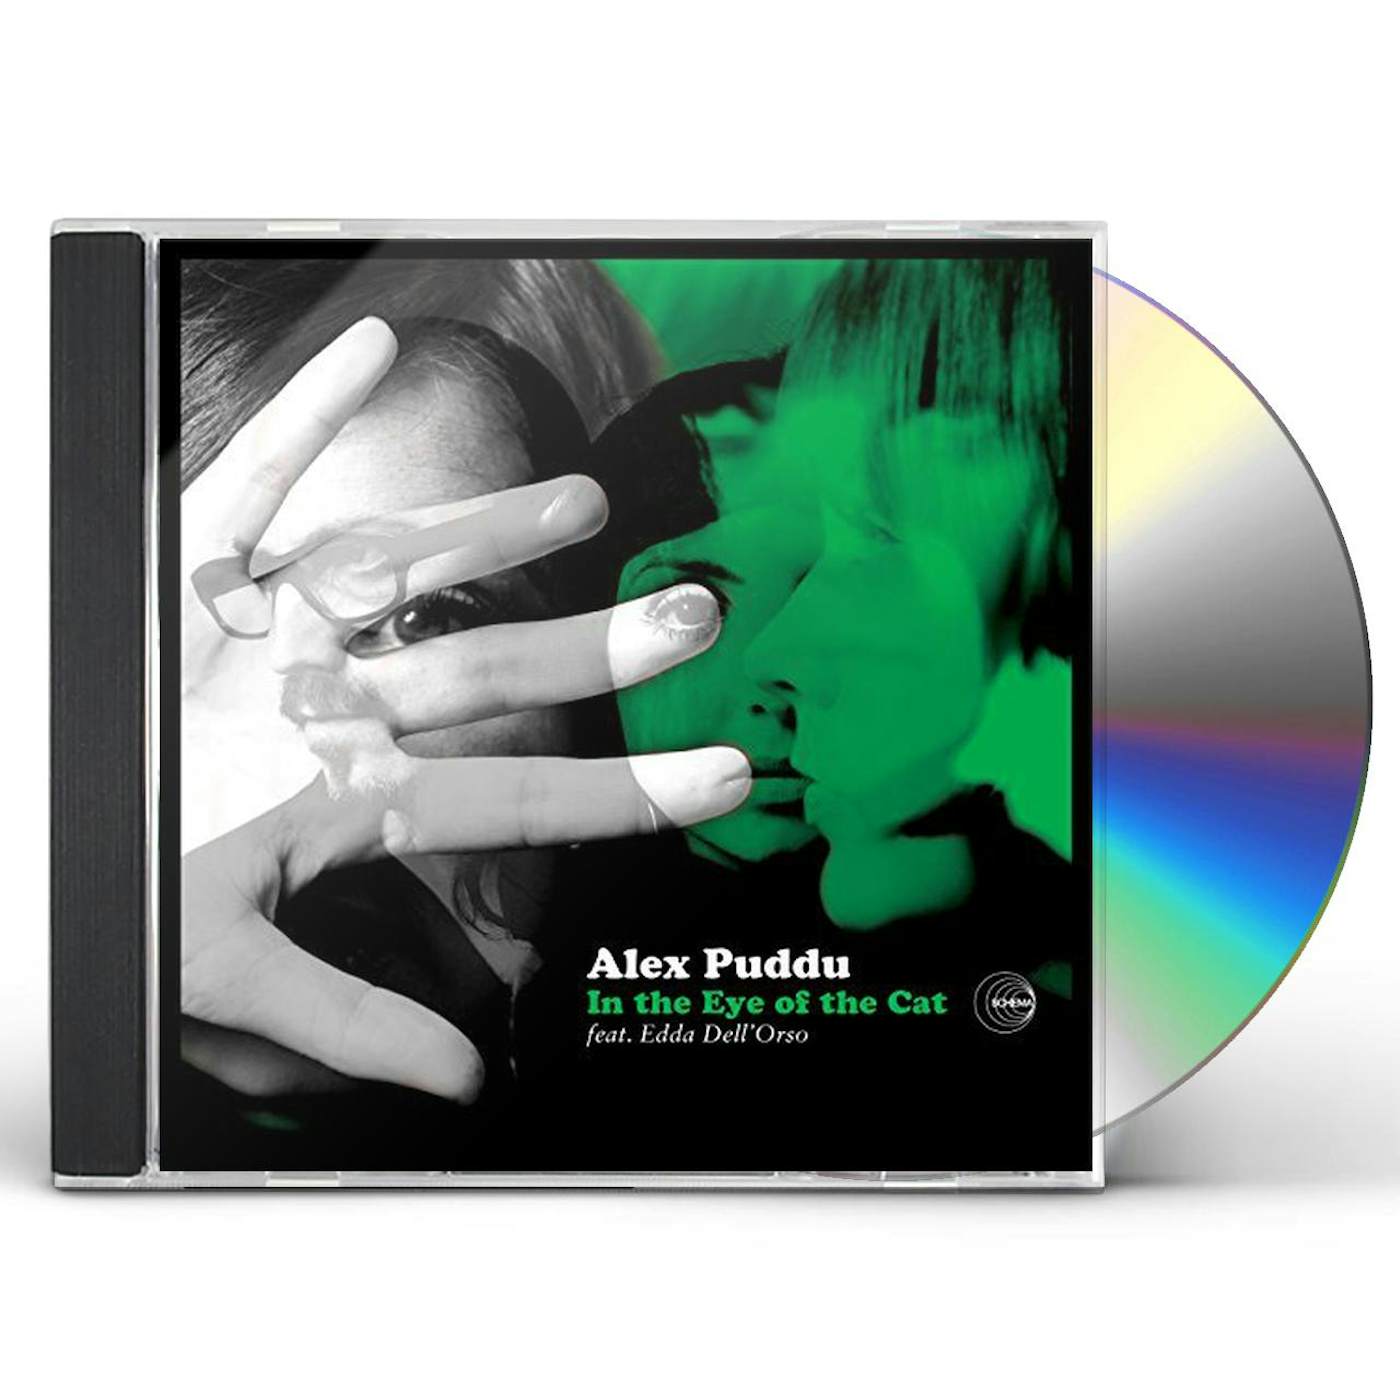 Alex Puddu IN THE EYE OF THE CAT - Original Soundtrack CD